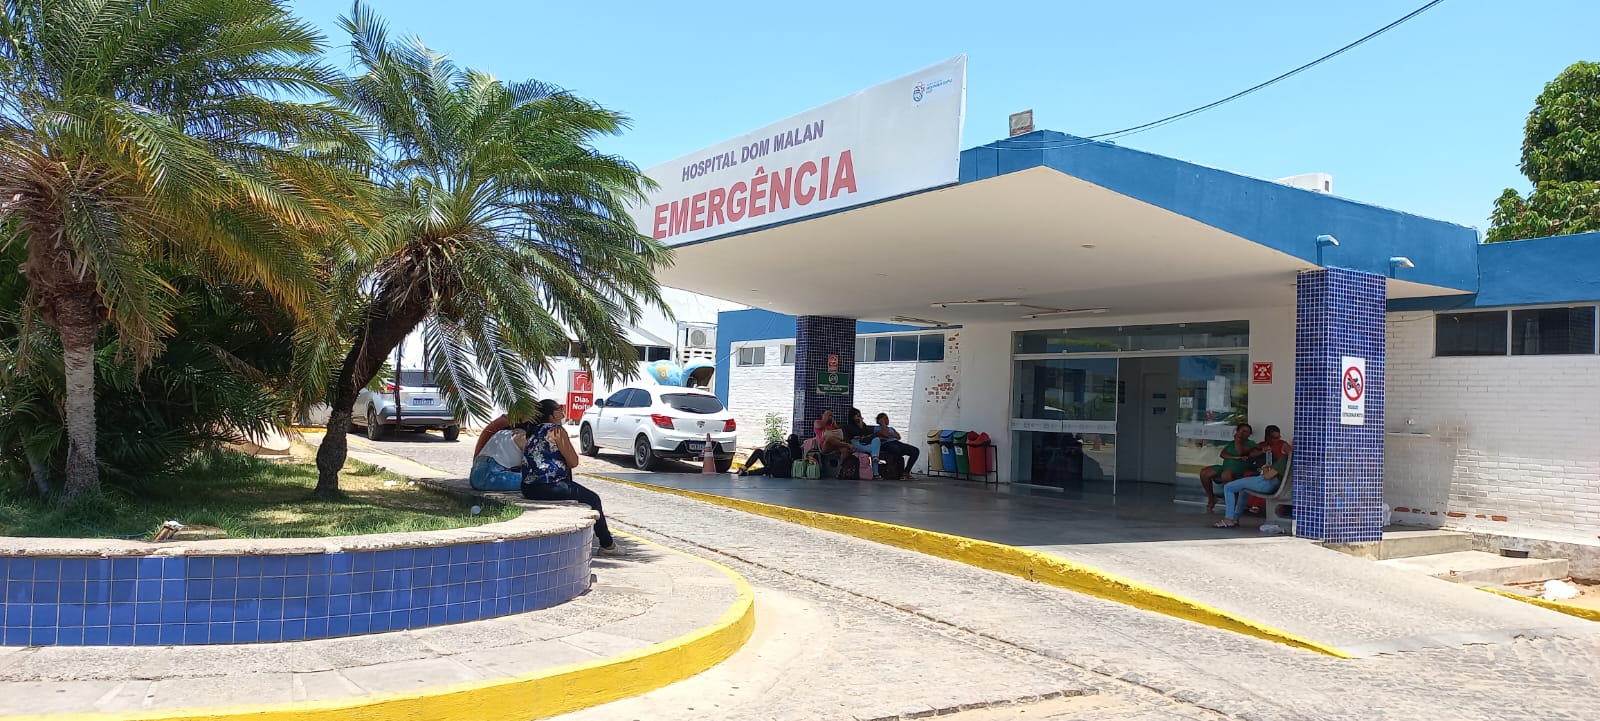 Hospital Dom Malan em Petrolina registra aumento no número de cirurgias realizadas no mês de junho